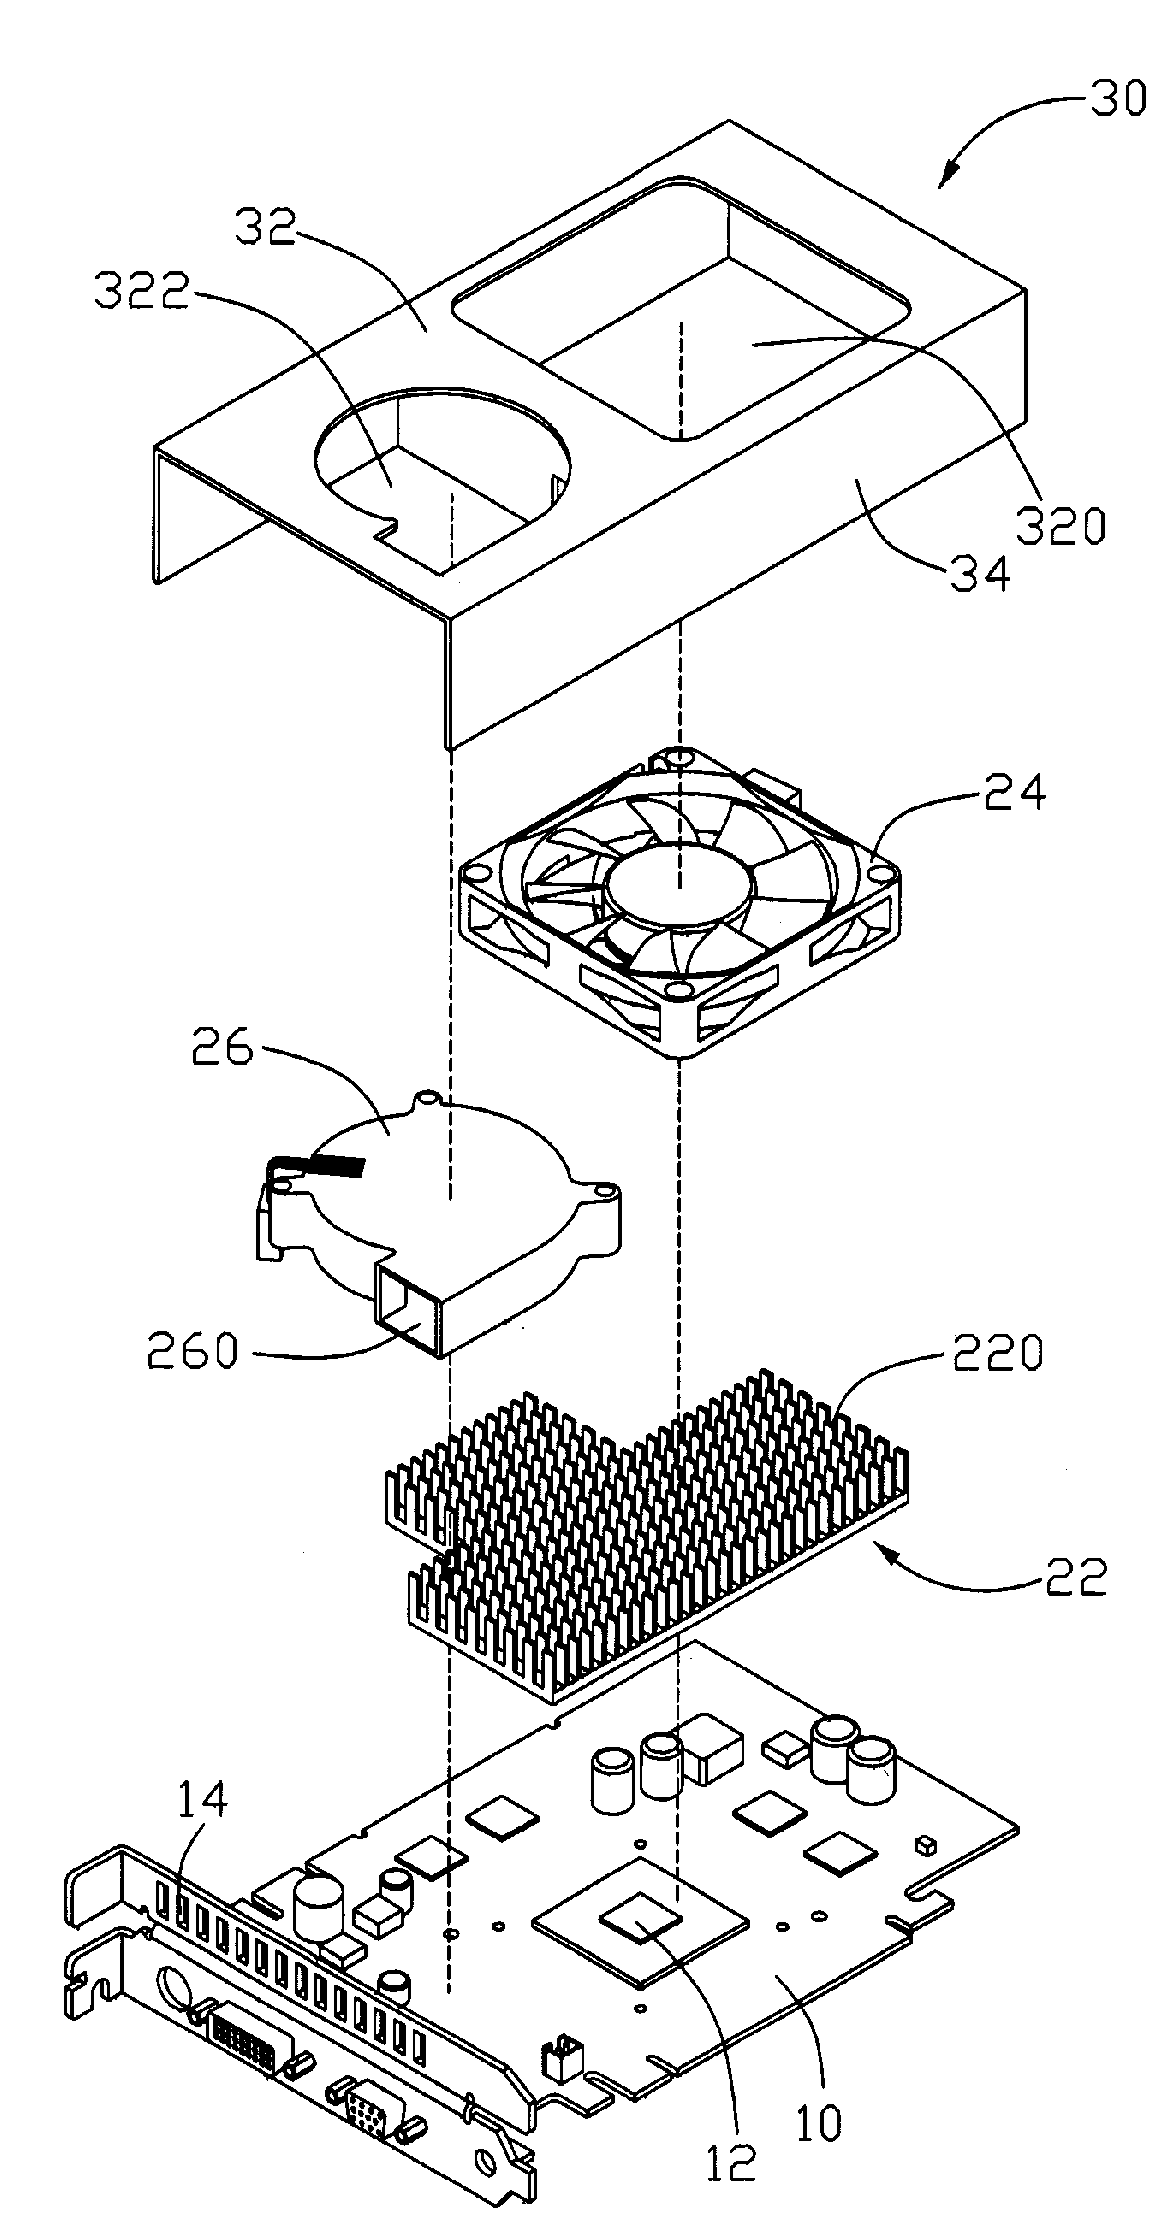 Heat dissipation device having a dual-fan arrangement